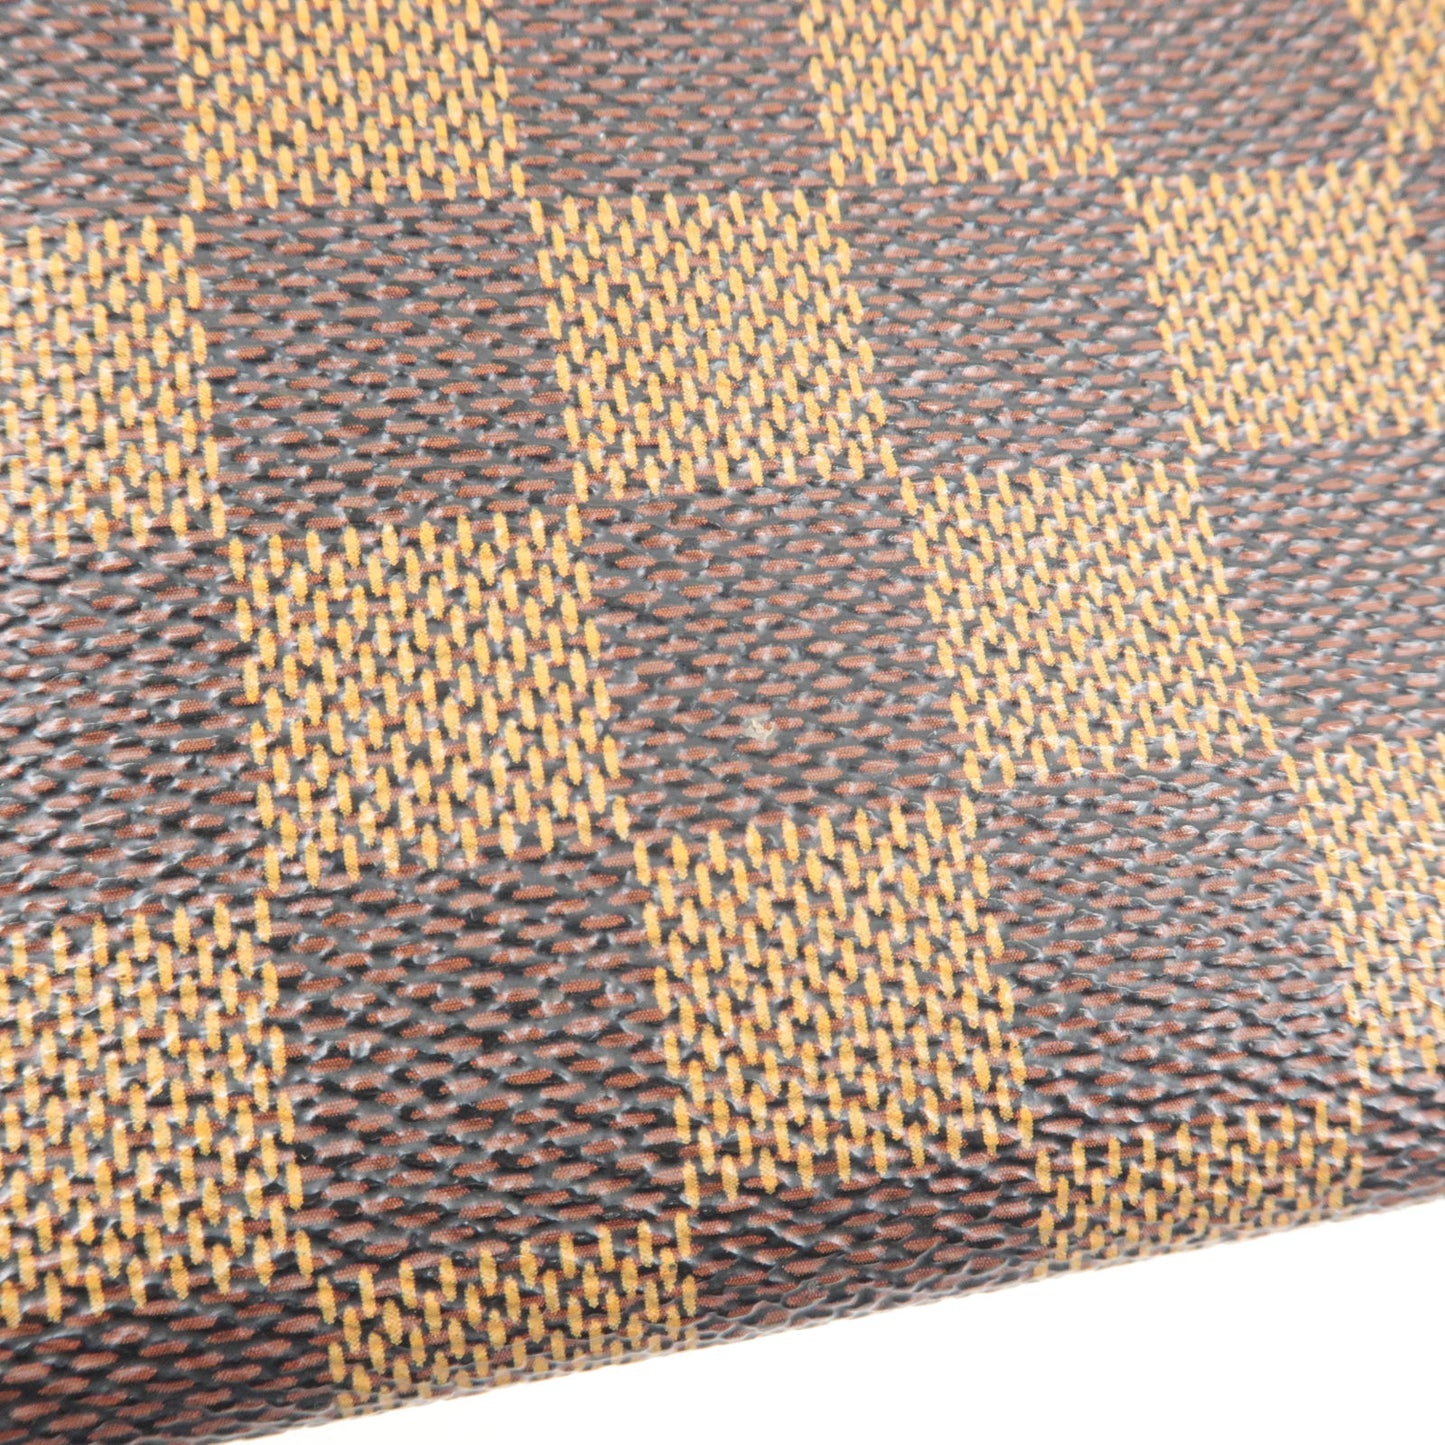 Louis Vuitton Damier Ebene Mini Pouch for Damier Male Bag